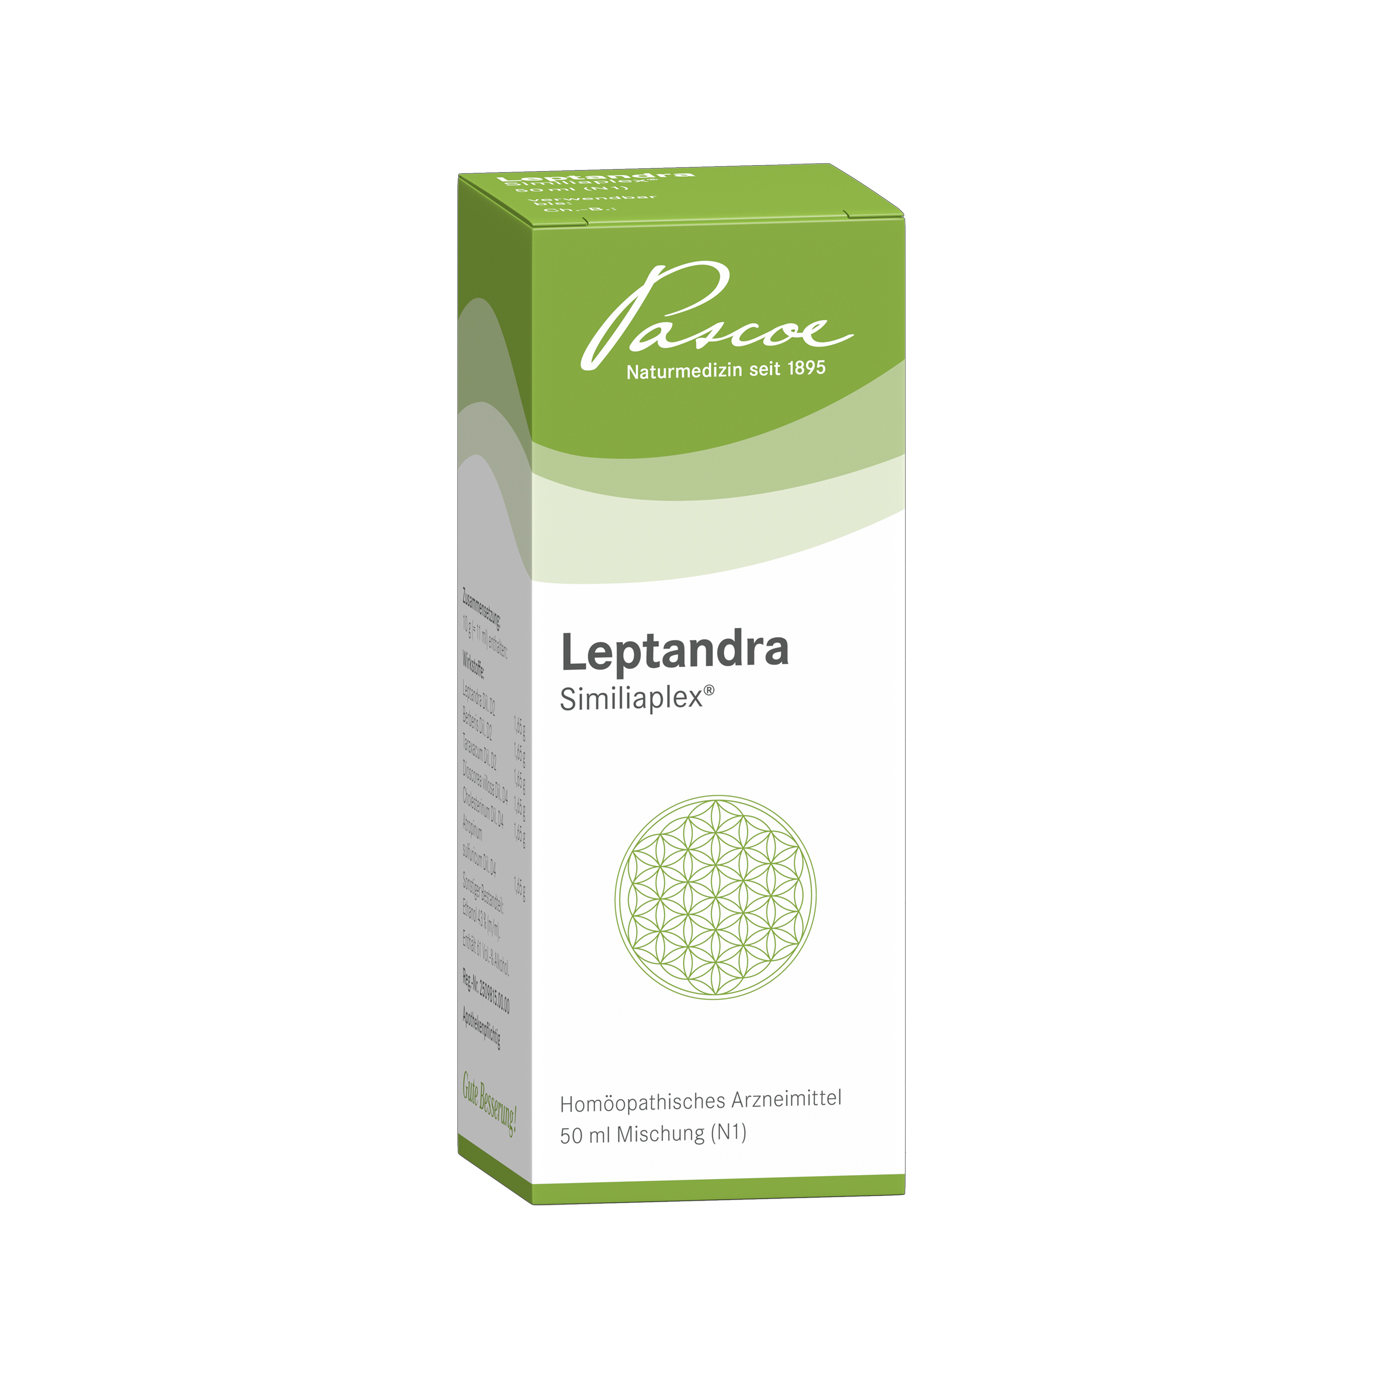 Leptandra Similiaplex 50 ml Packshot PZN 01353232